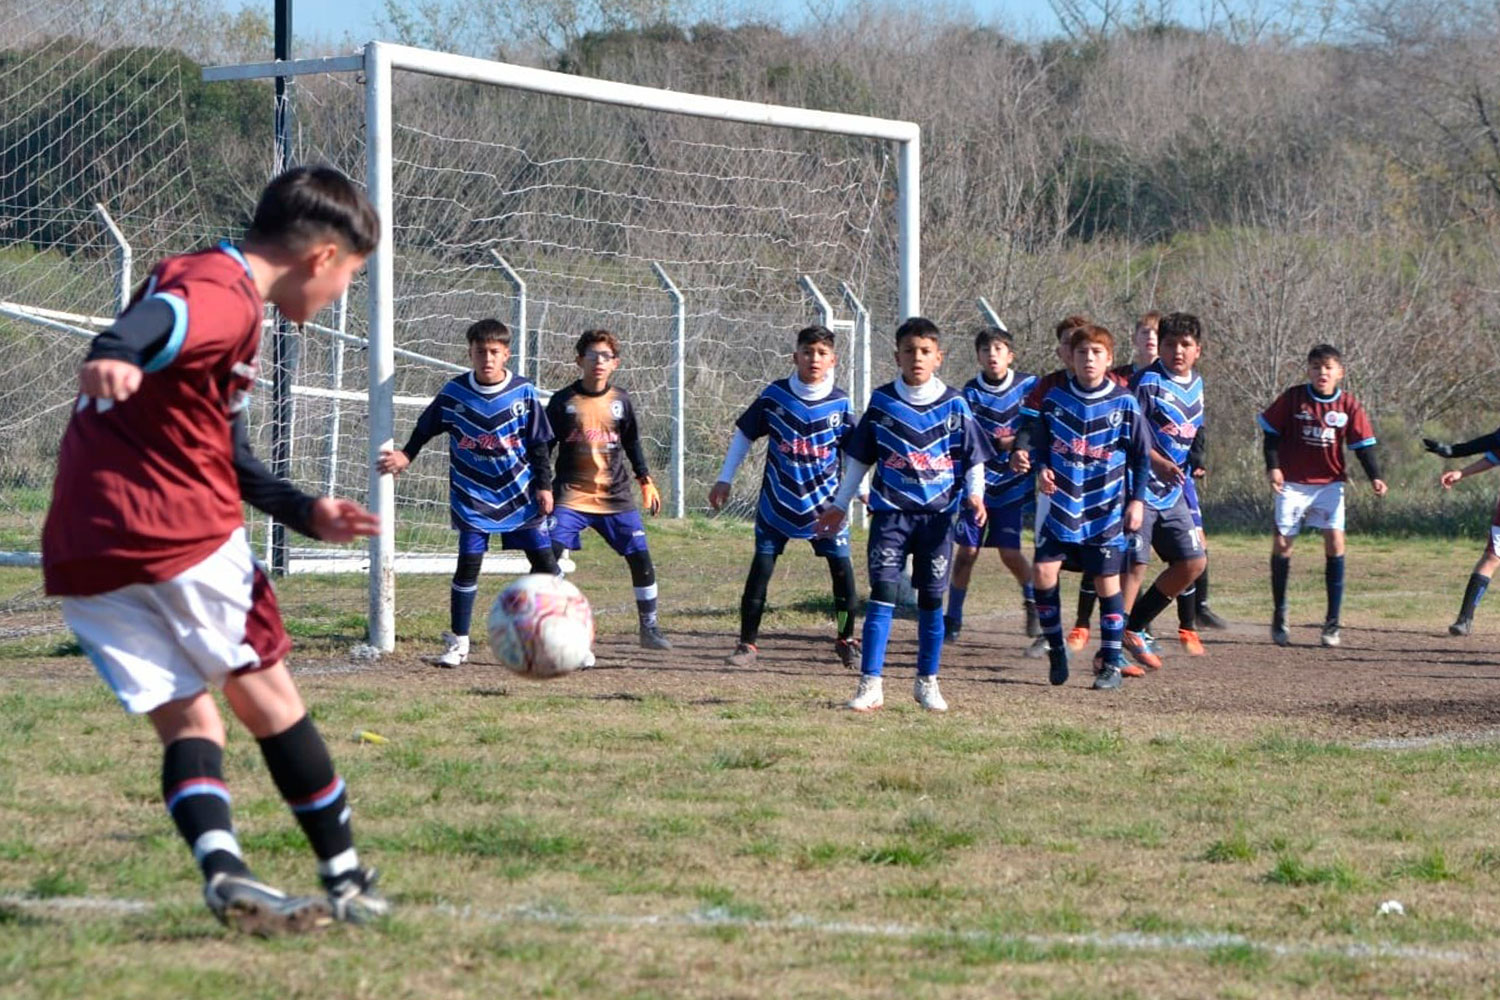 Burzaco F.C on X: Esta mañana Independiente de Burzaco y Burzaco Fútbol  Club organizaron una jornada de amistosos para las categorías Pre-Mini,  Mini y Pre- Infantiles con el objetivo de sumar minutos